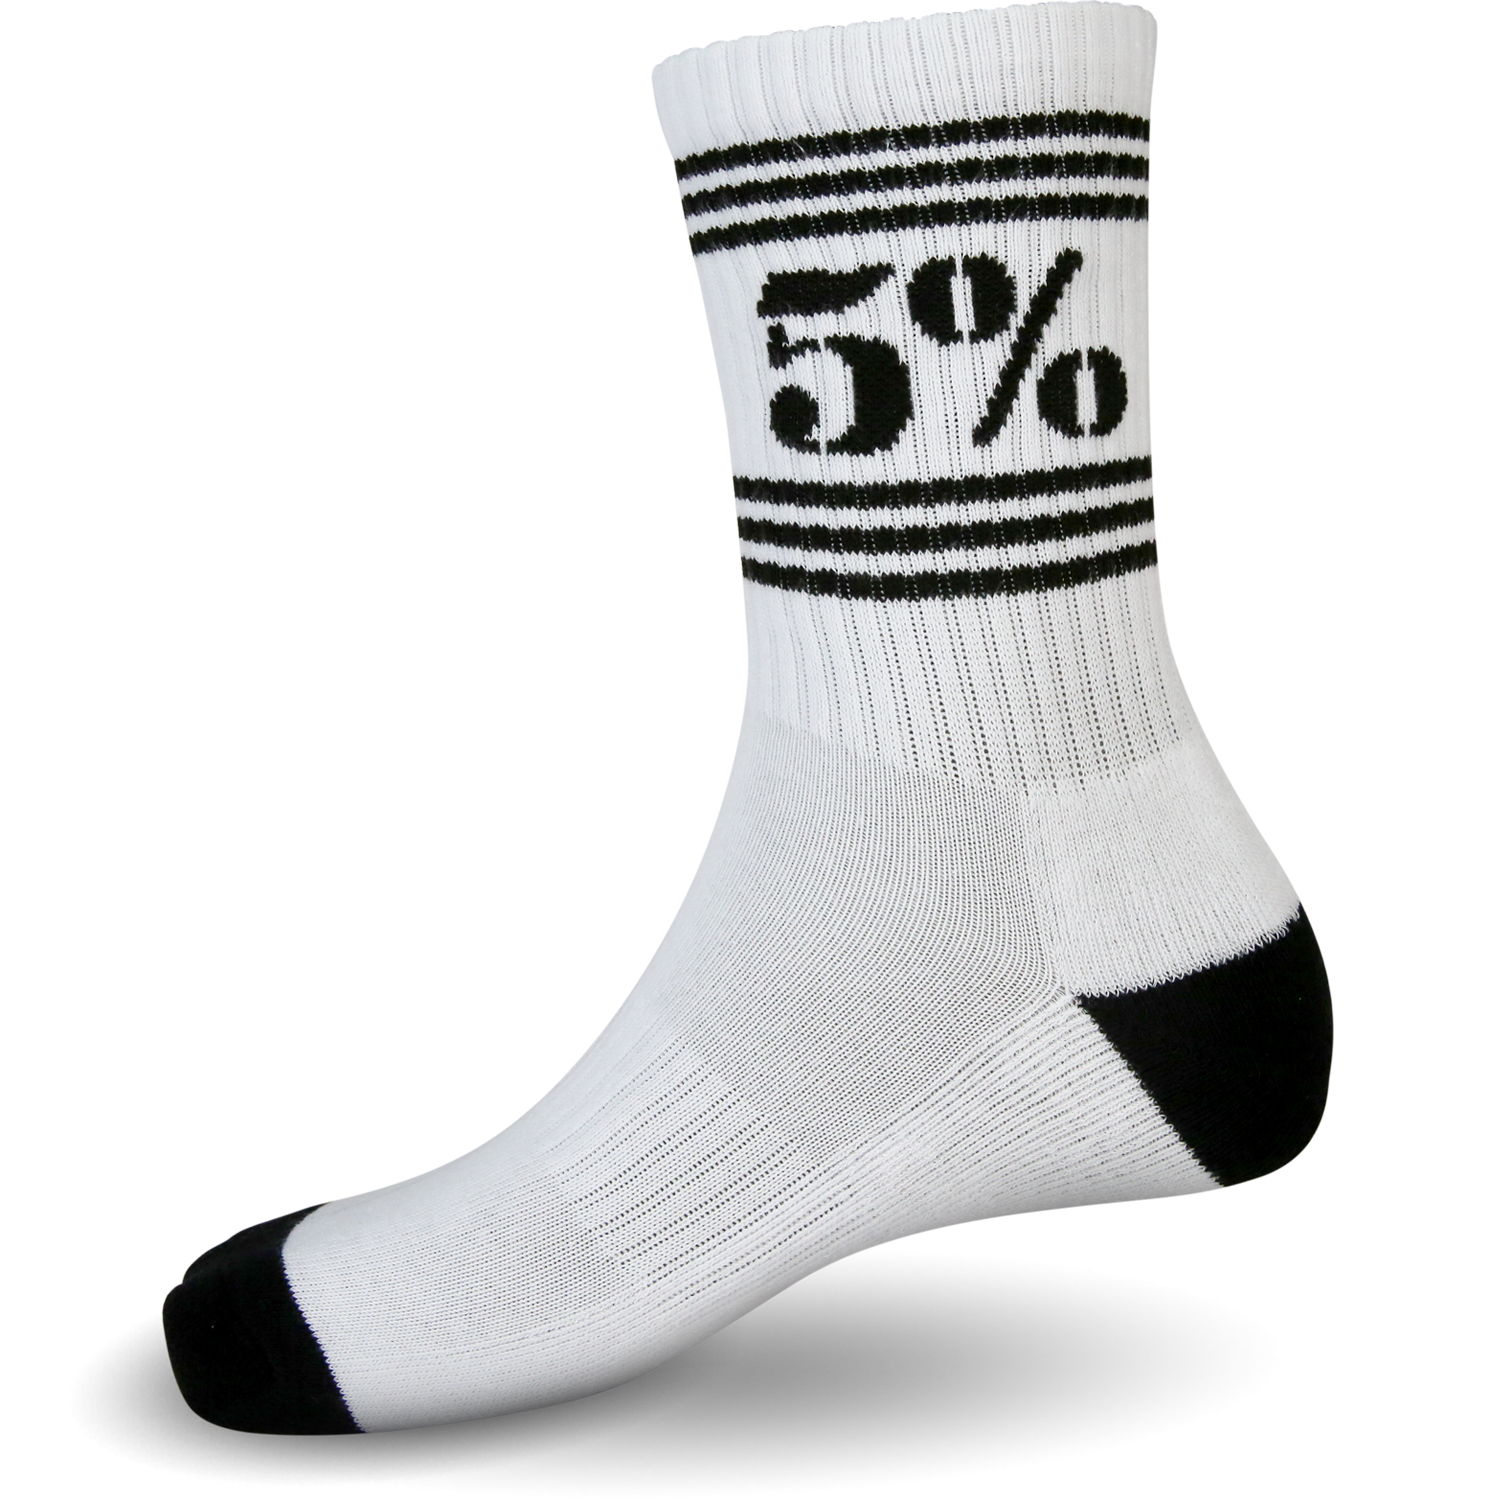 5% White Crew Socks - 5% Nutrition